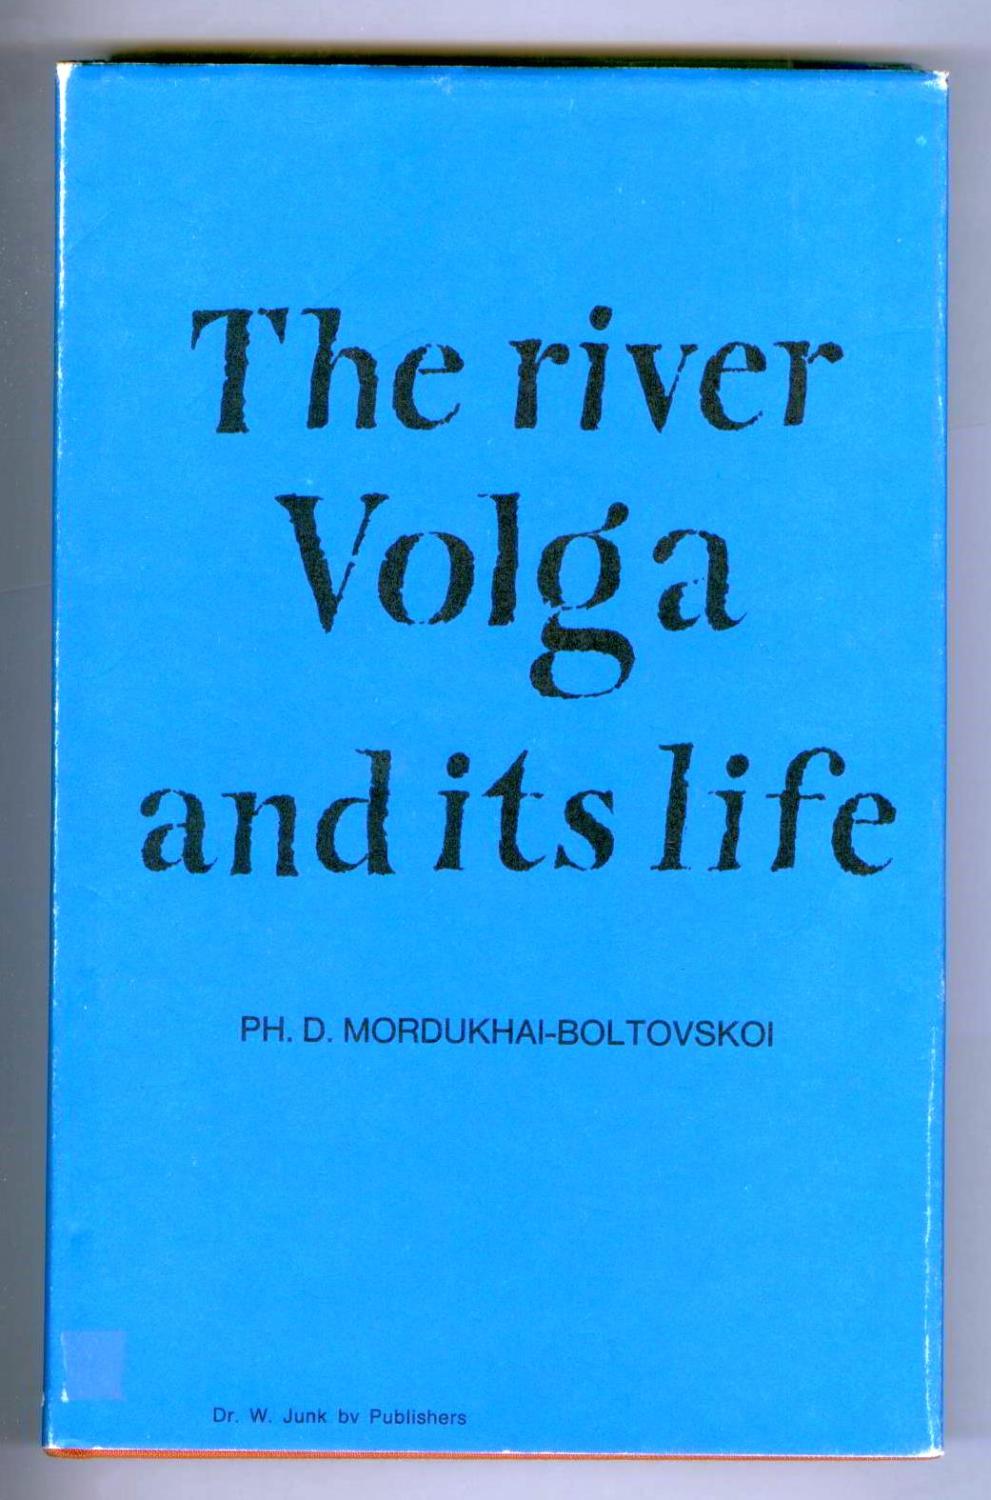 The River Volga And Its Life - MORDUKHAI-BOLOTOVSKOI, Ph. D. (ed.)